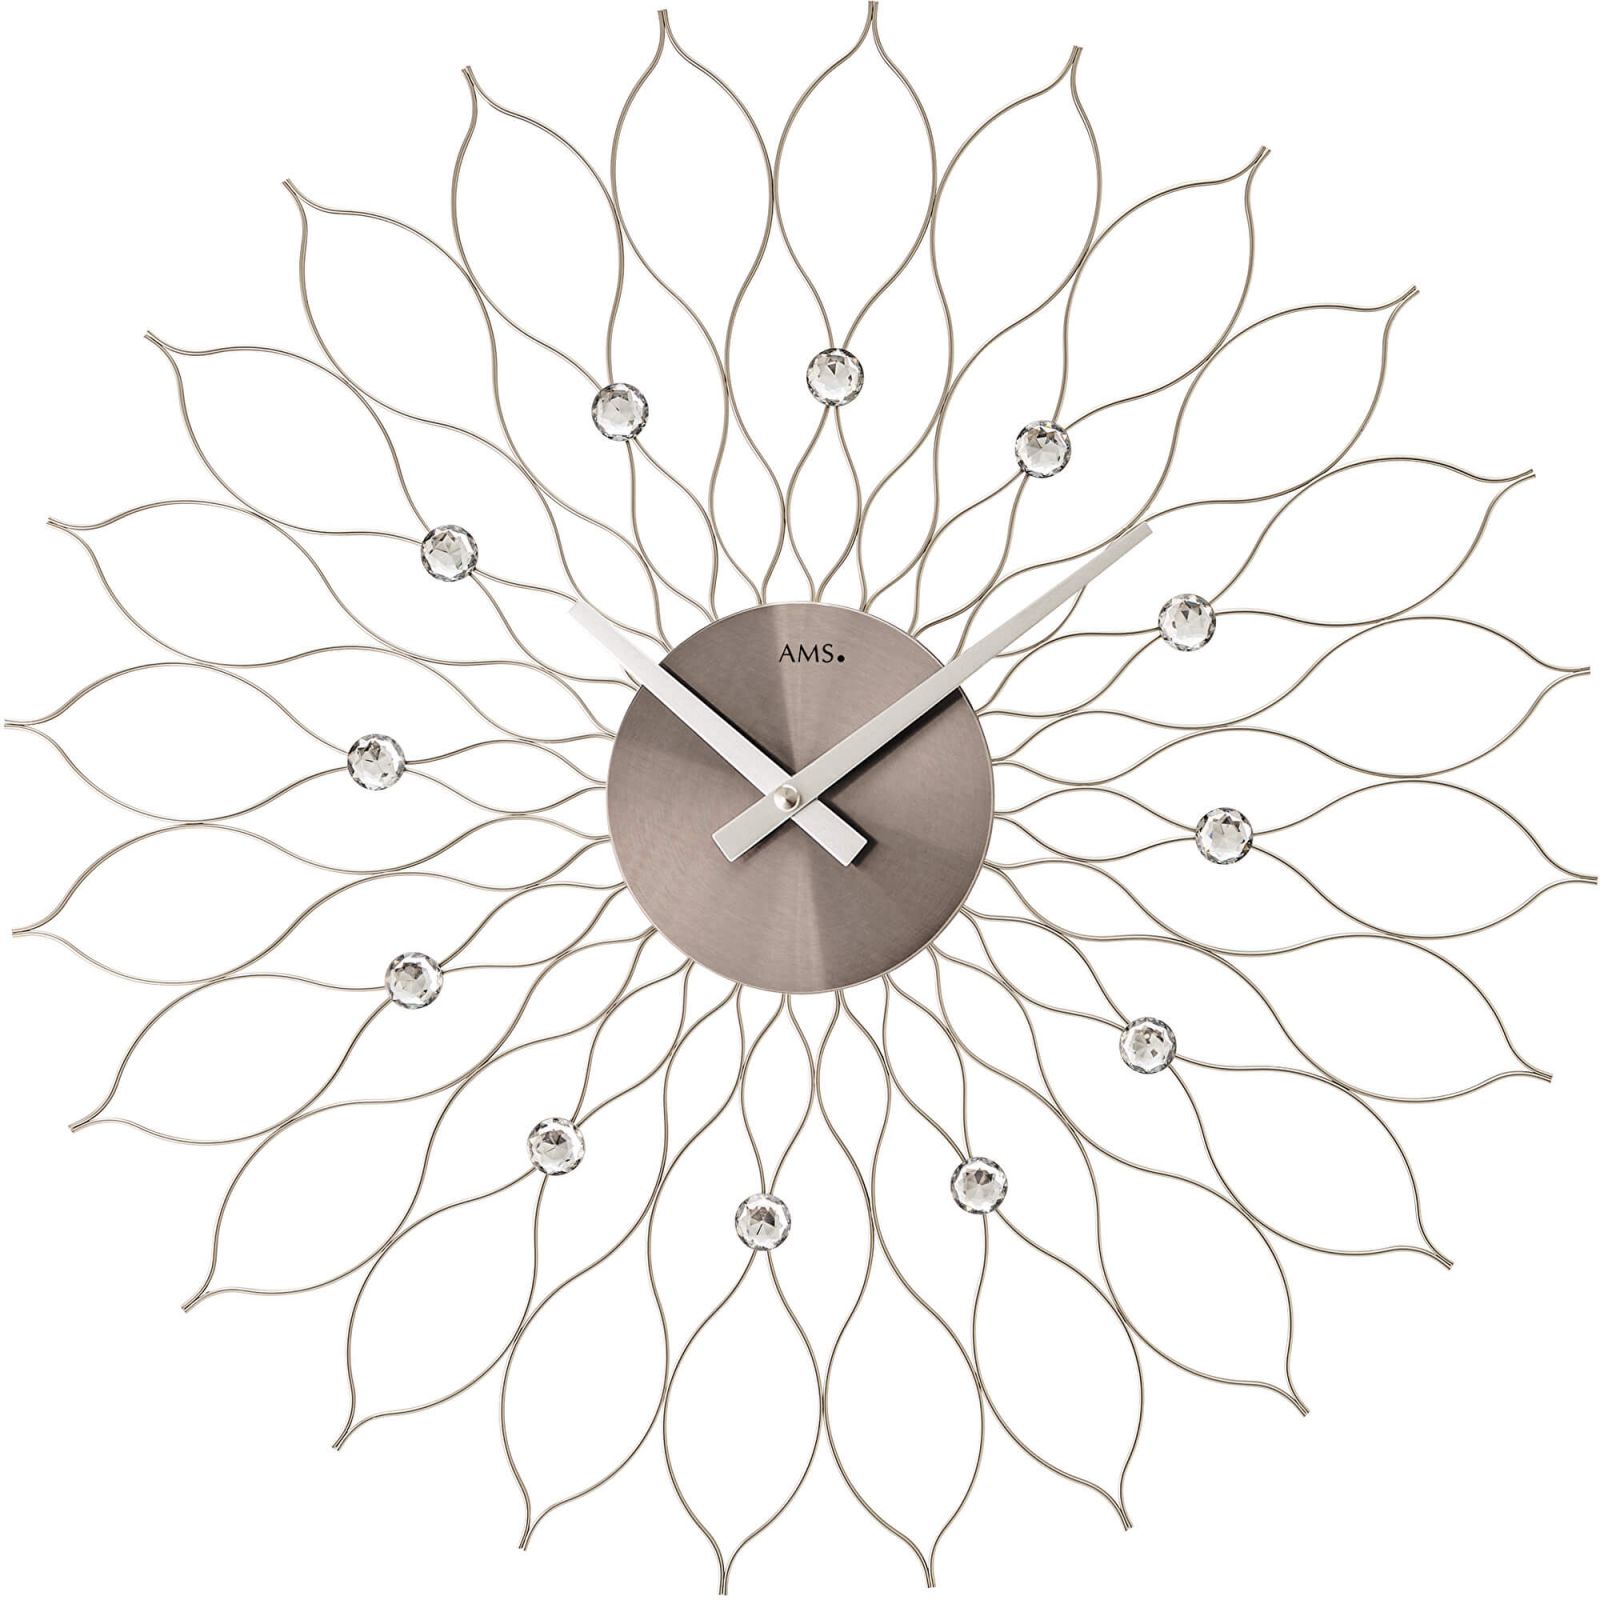 Nástěnné hodiny velké ams 9608 stříbrná motiv sluníčko květina